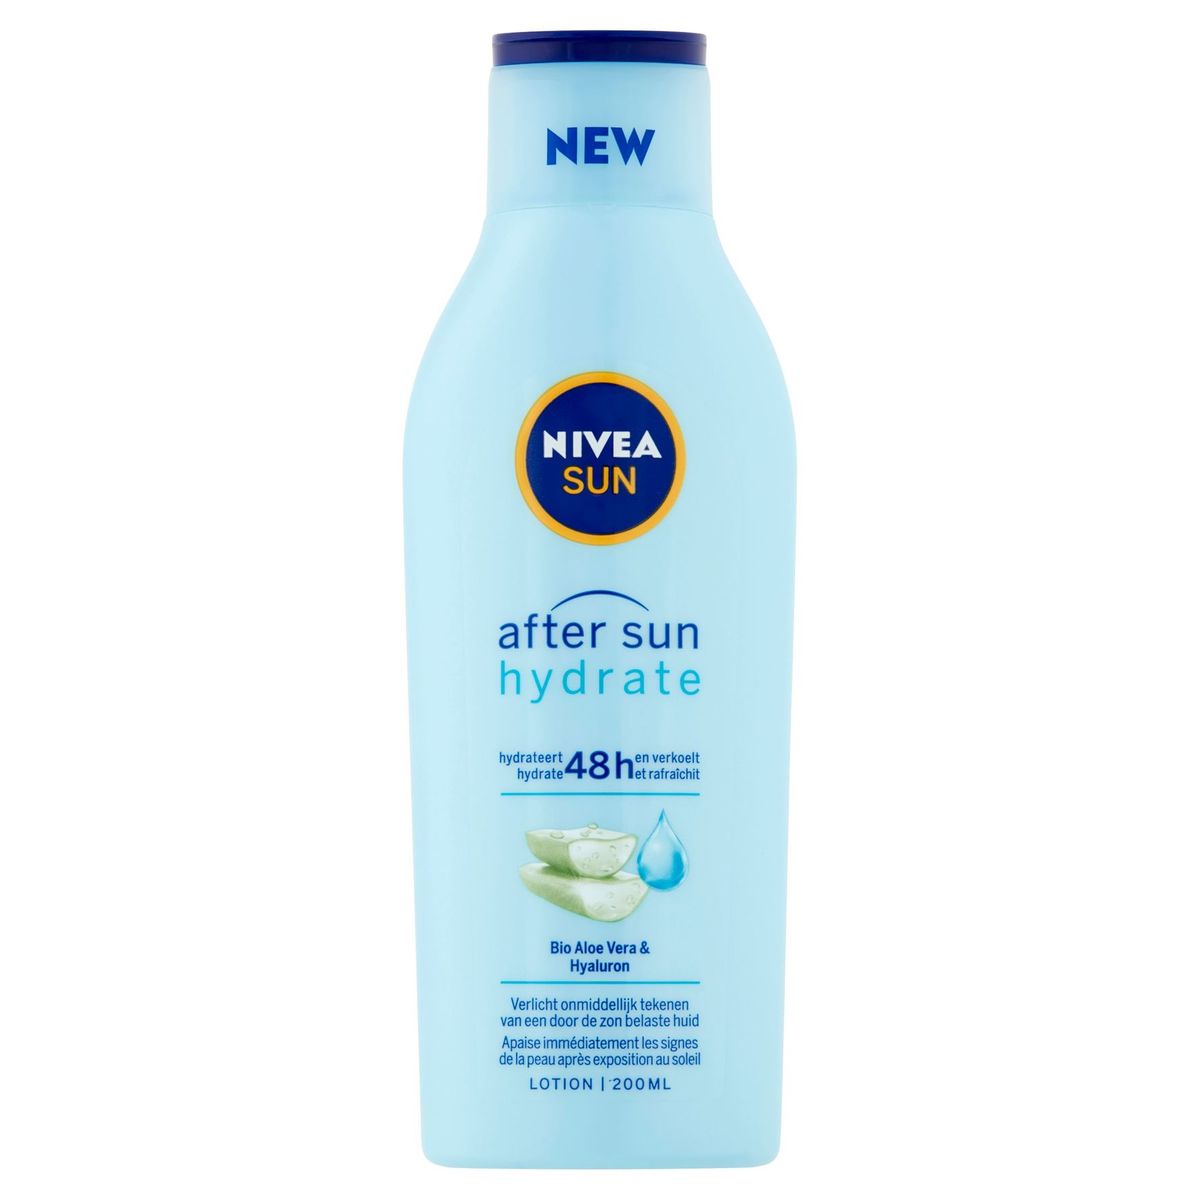 Nivea Sun After Sun Hydrate Bio Aloe Vera & Hyaluron Lotion 200 ml